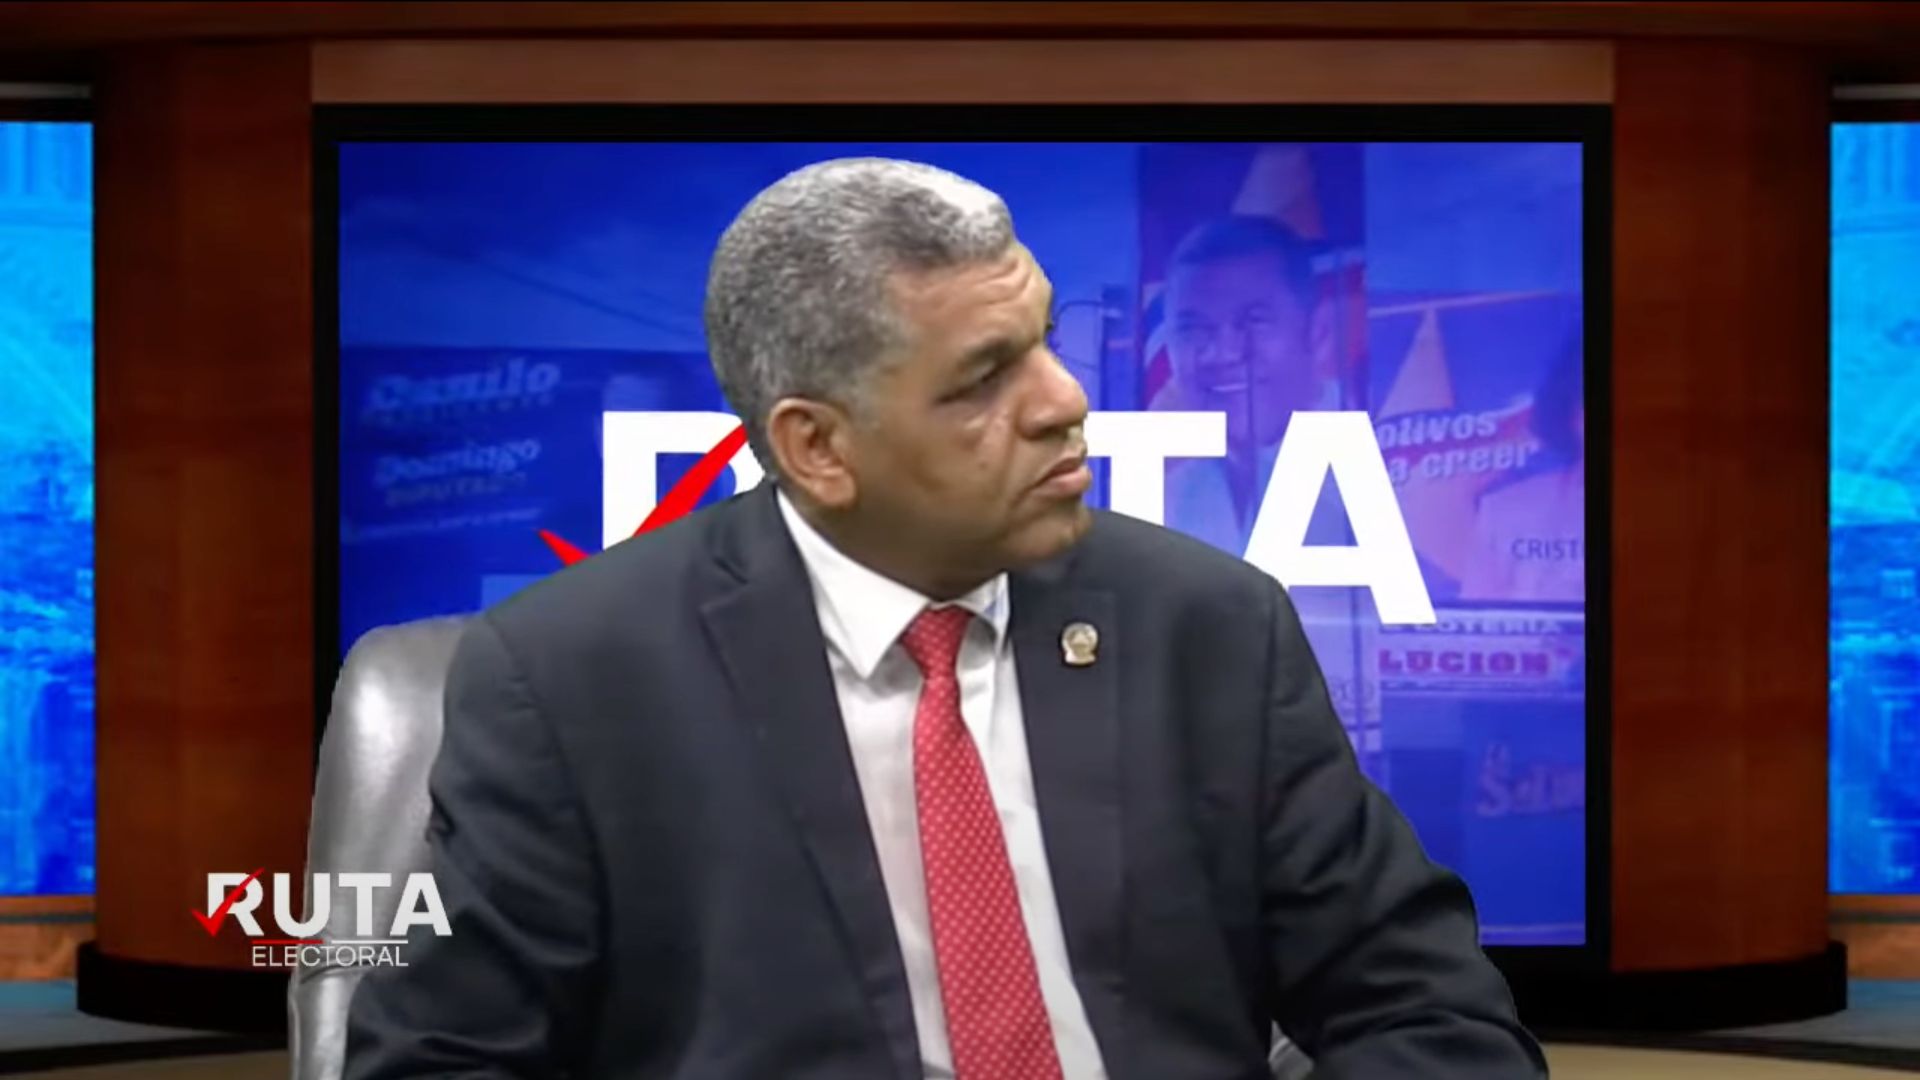 Diputado afirma bancada dominicana en PARLACEN tiene “compromiso sagrado” con la democracia